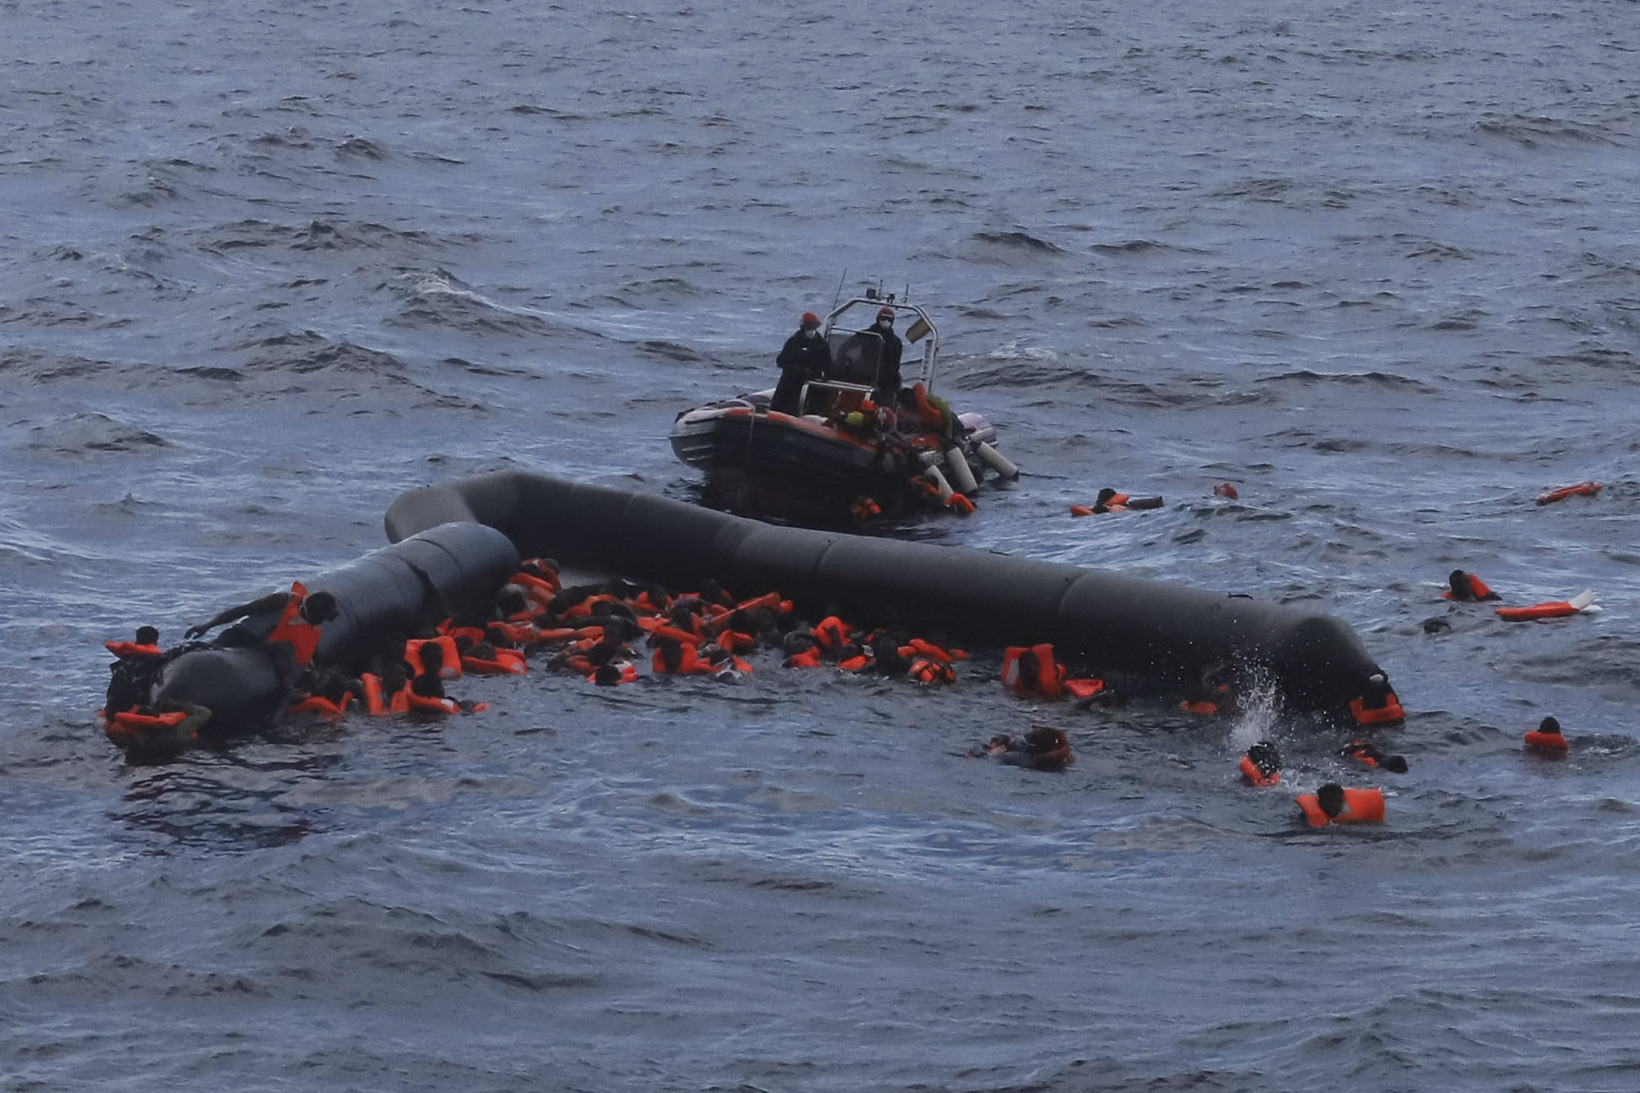 Os sobreviventes resgatados foram levados para terra pela guarda costeira líbia e por pescadores (Foto: AP/Sergi Camara)